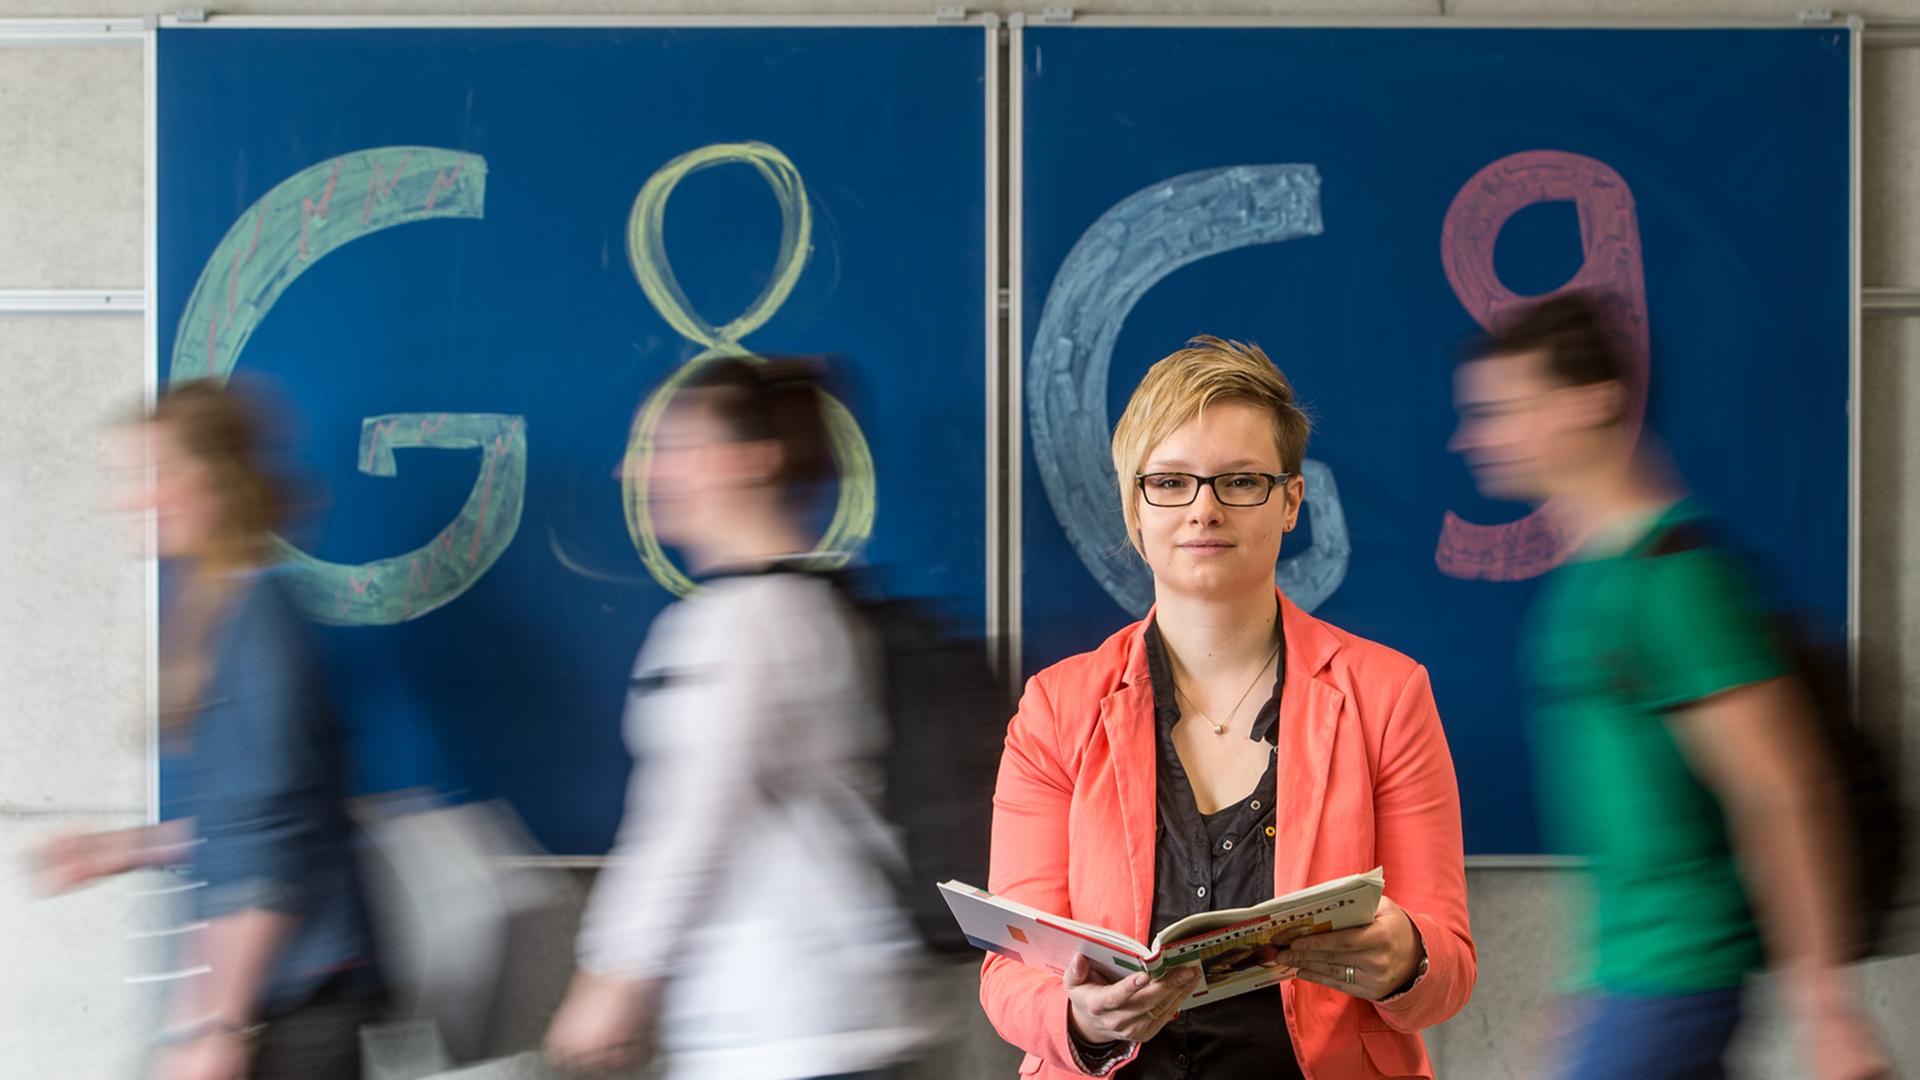 Gymnasiallehrerin Theresa Neudecker sitzt in einem Gymnasium in Straubing / Bayern vor einer Tafel mit der Aufschrift "G8" und "G9".